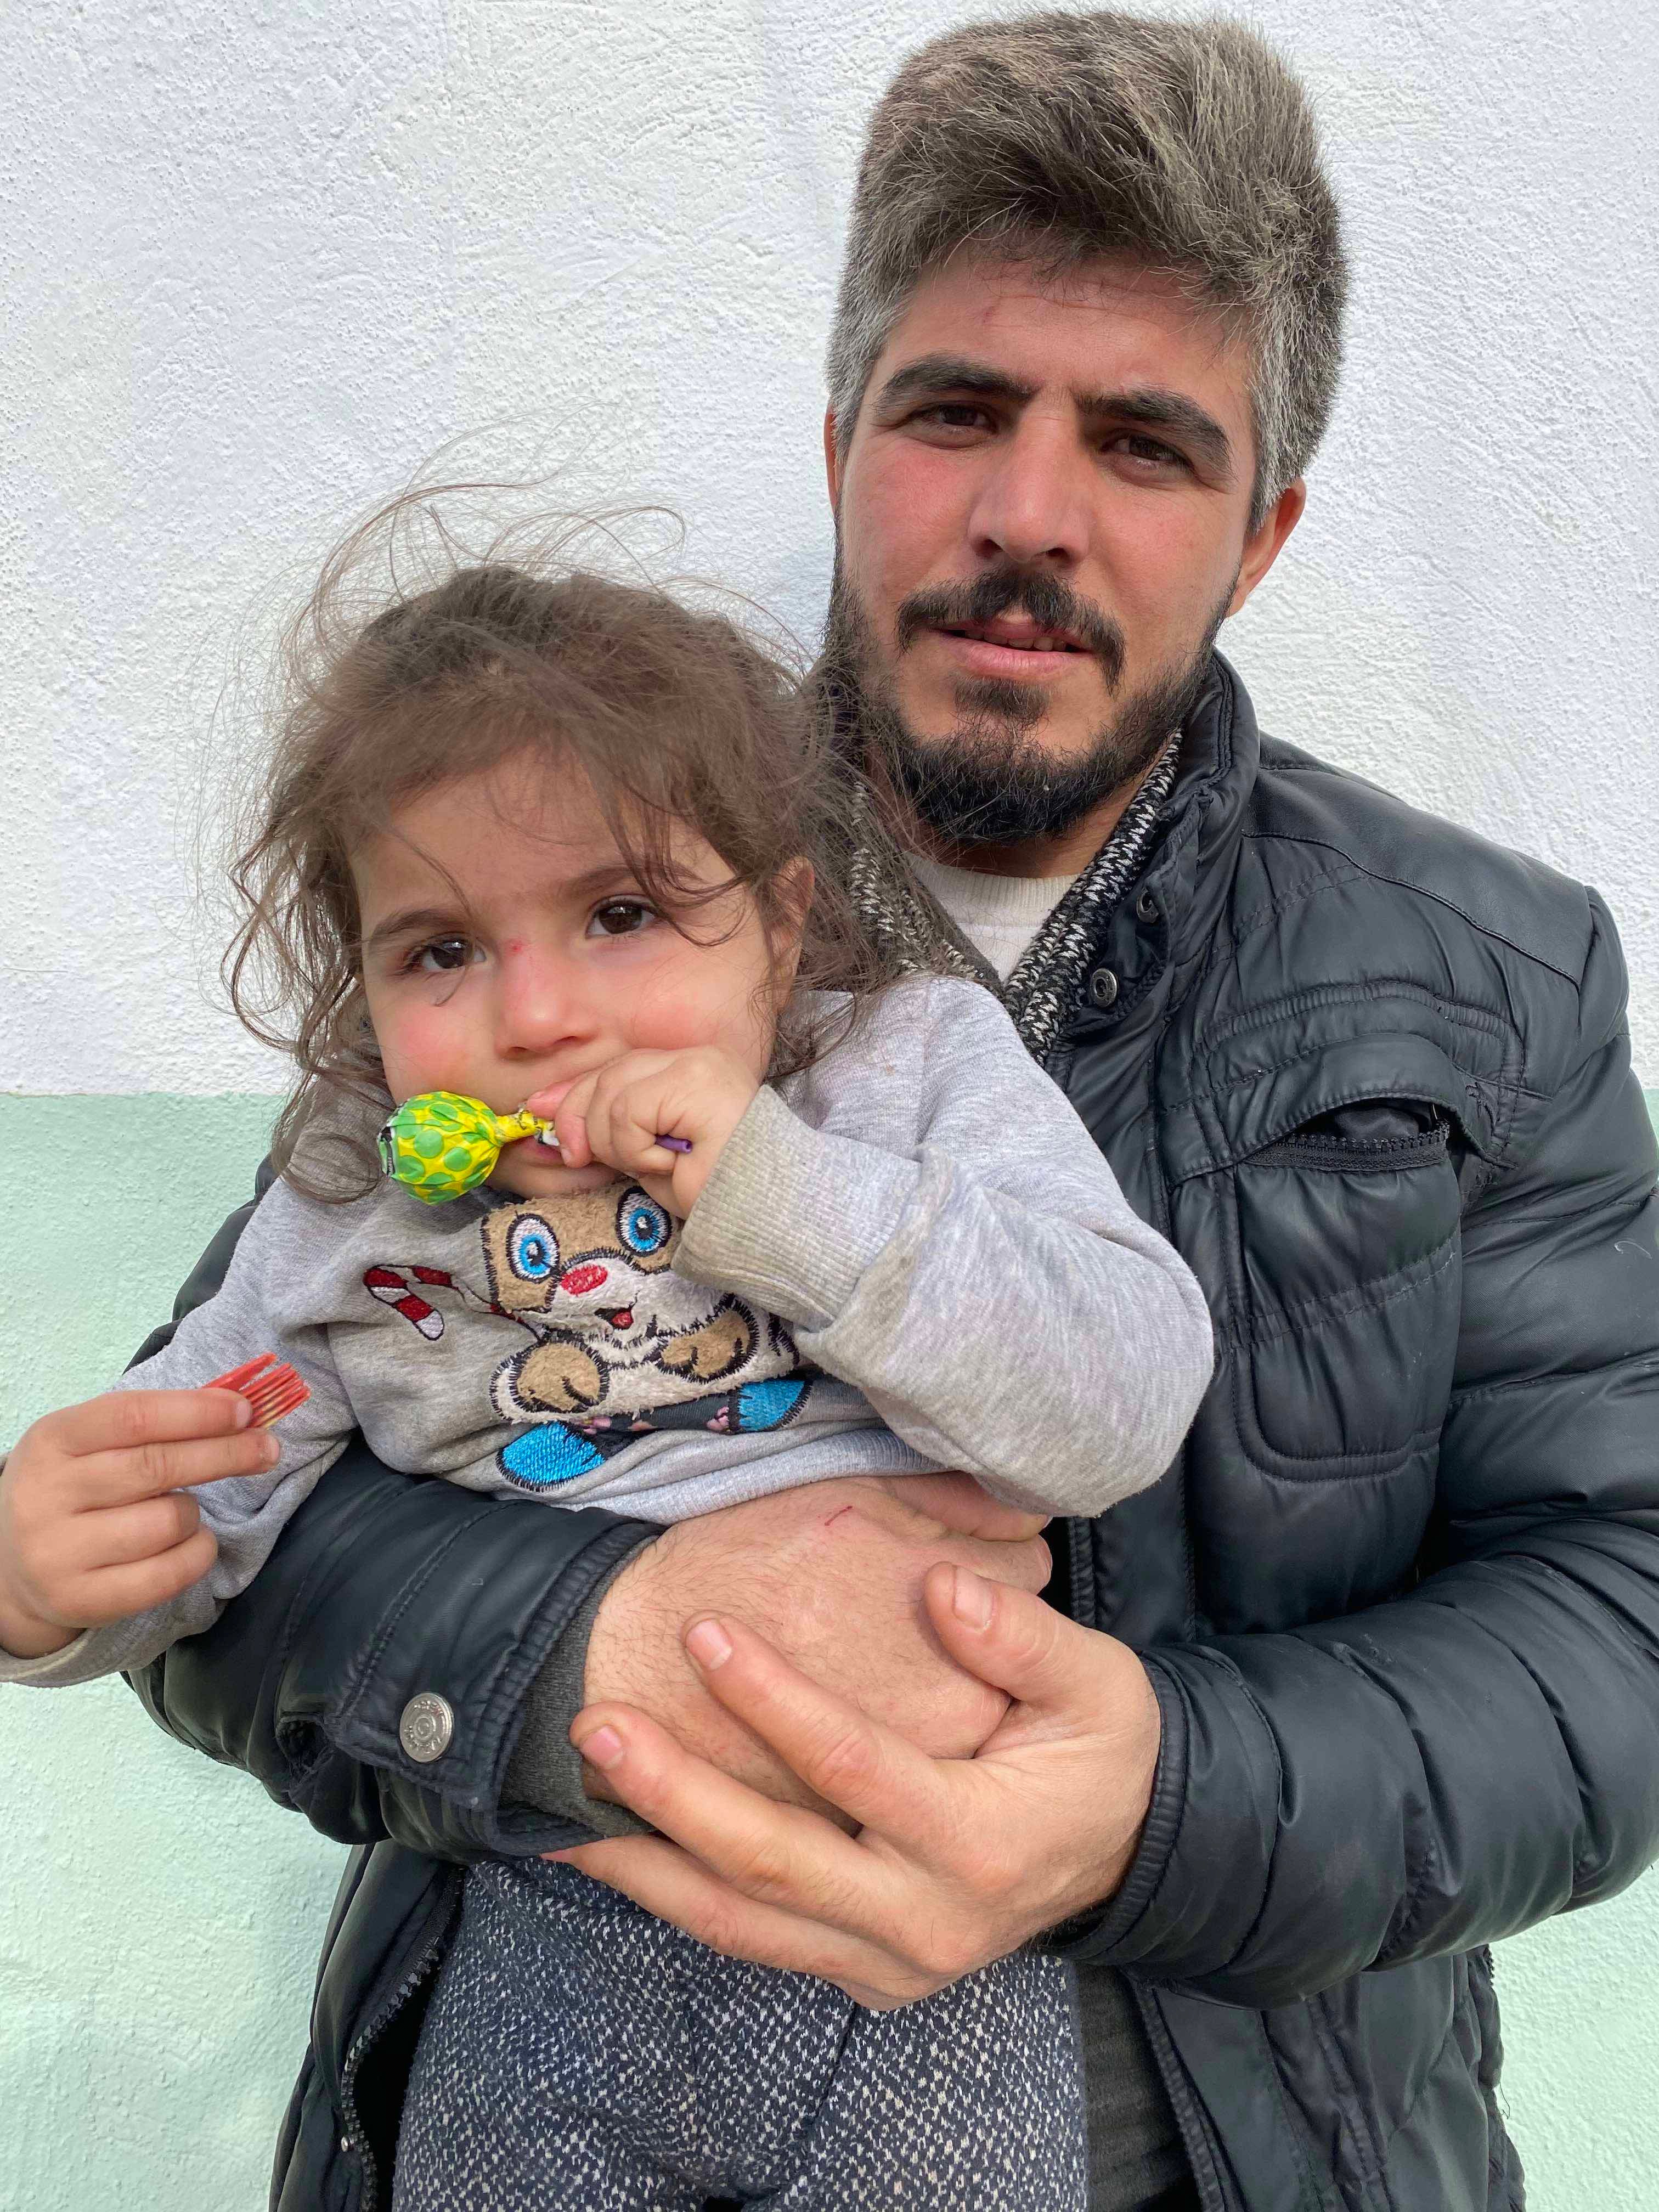 Ένας Σύρος άνδρας κρατάει την 2χρονη κόρη του στο Alibey, παραμεθόριο χωριό της Τουρκίας, στις 9 Μαρτίου 2020, μία μέρα αφότου, όπως μας είπε, οι ελληνικές δυνάμεις ασφαλείας έθεσαν υπό κράτηση και ξυλοκόπησαν και τους δυο τους όταν ο ίδιος προσπάθησε να 